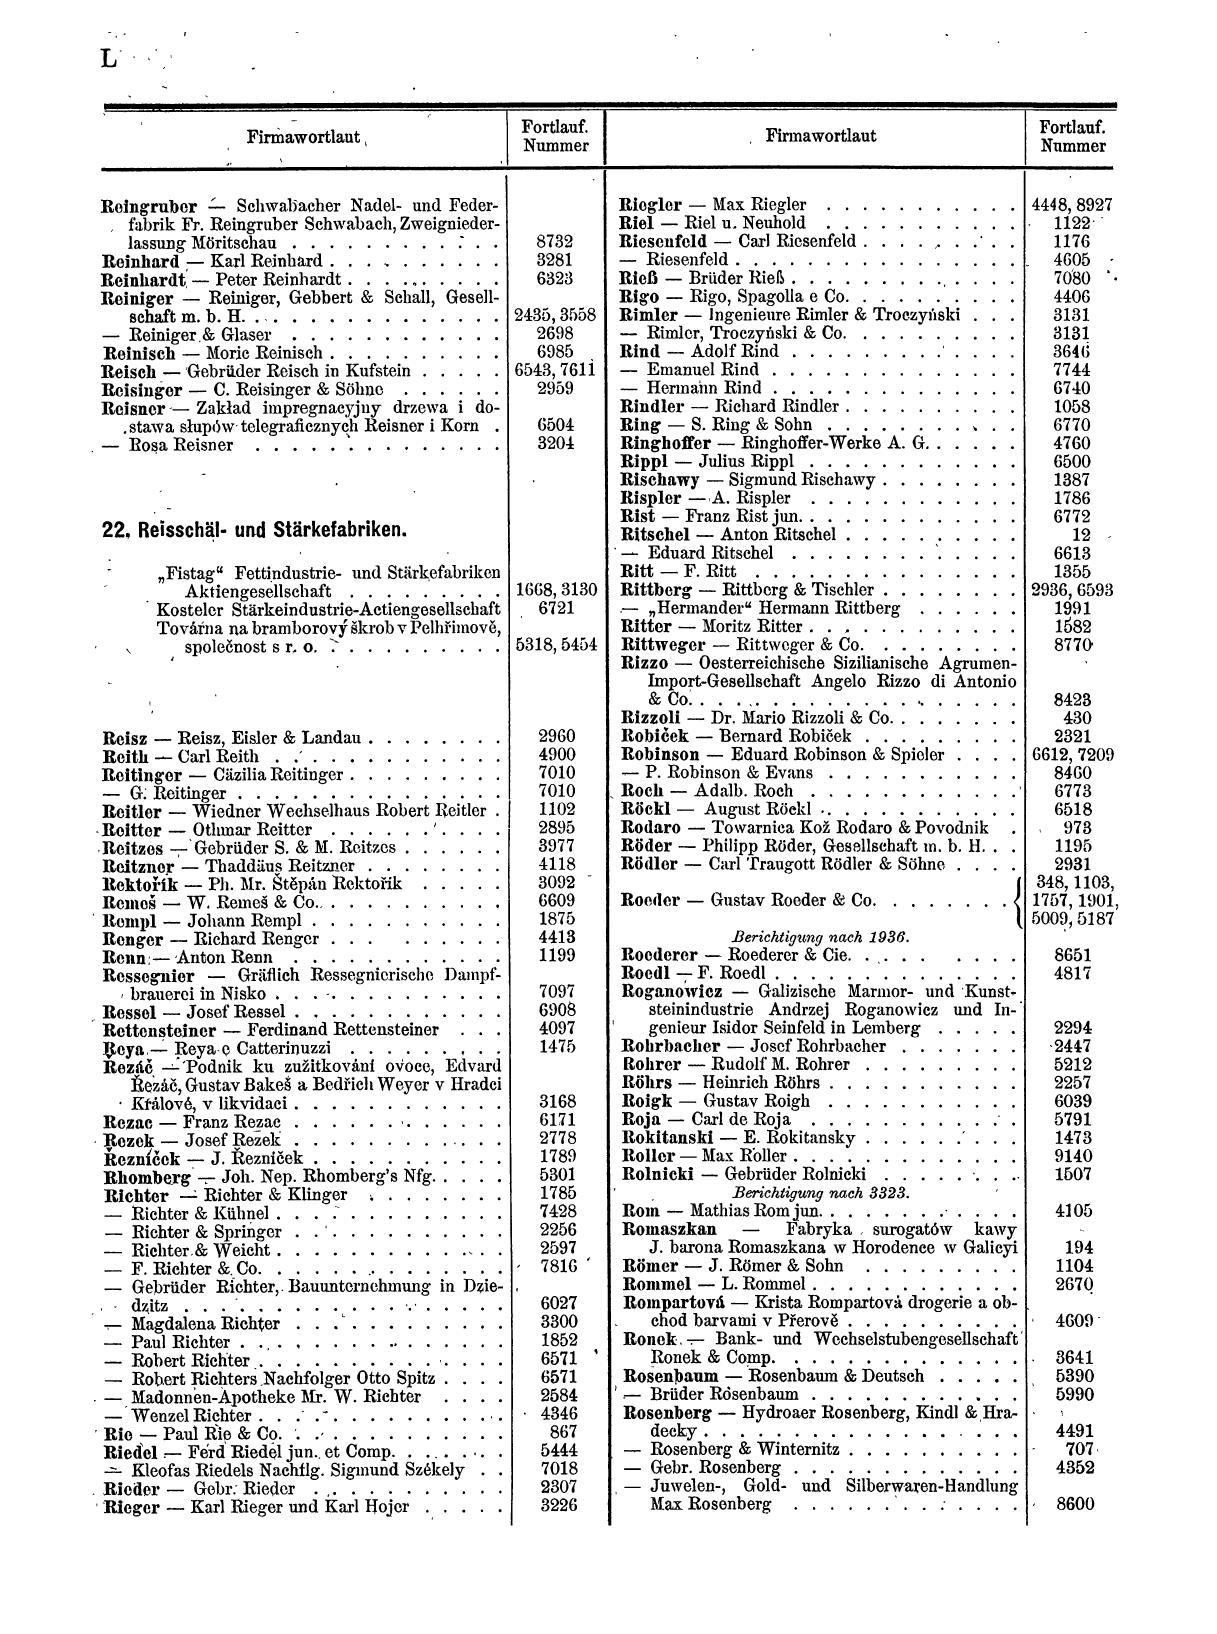 Zentralblatt für die Eintragungen in das Handelsregister 1913, Teil 1 - Seite 58